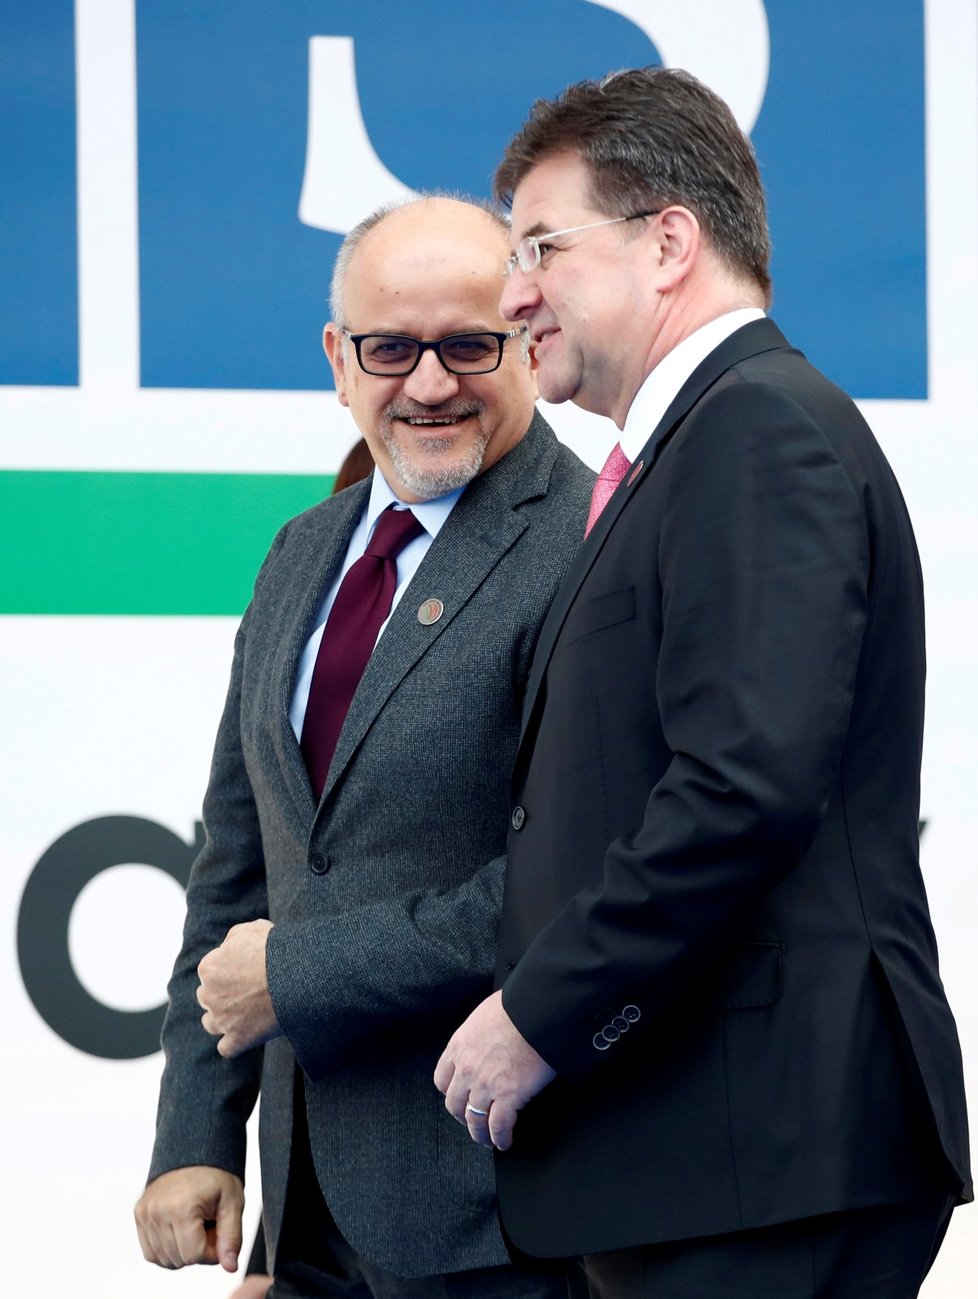 Slovenský ministr zahraničí Miroslav Lajčák stáhl svou rezignaci. Lajčák minulý týden předal prezidentovi Andreji Kiskovi demisi v reakci na to, že slovenští poslanci odmítli migrační pakt OSN.